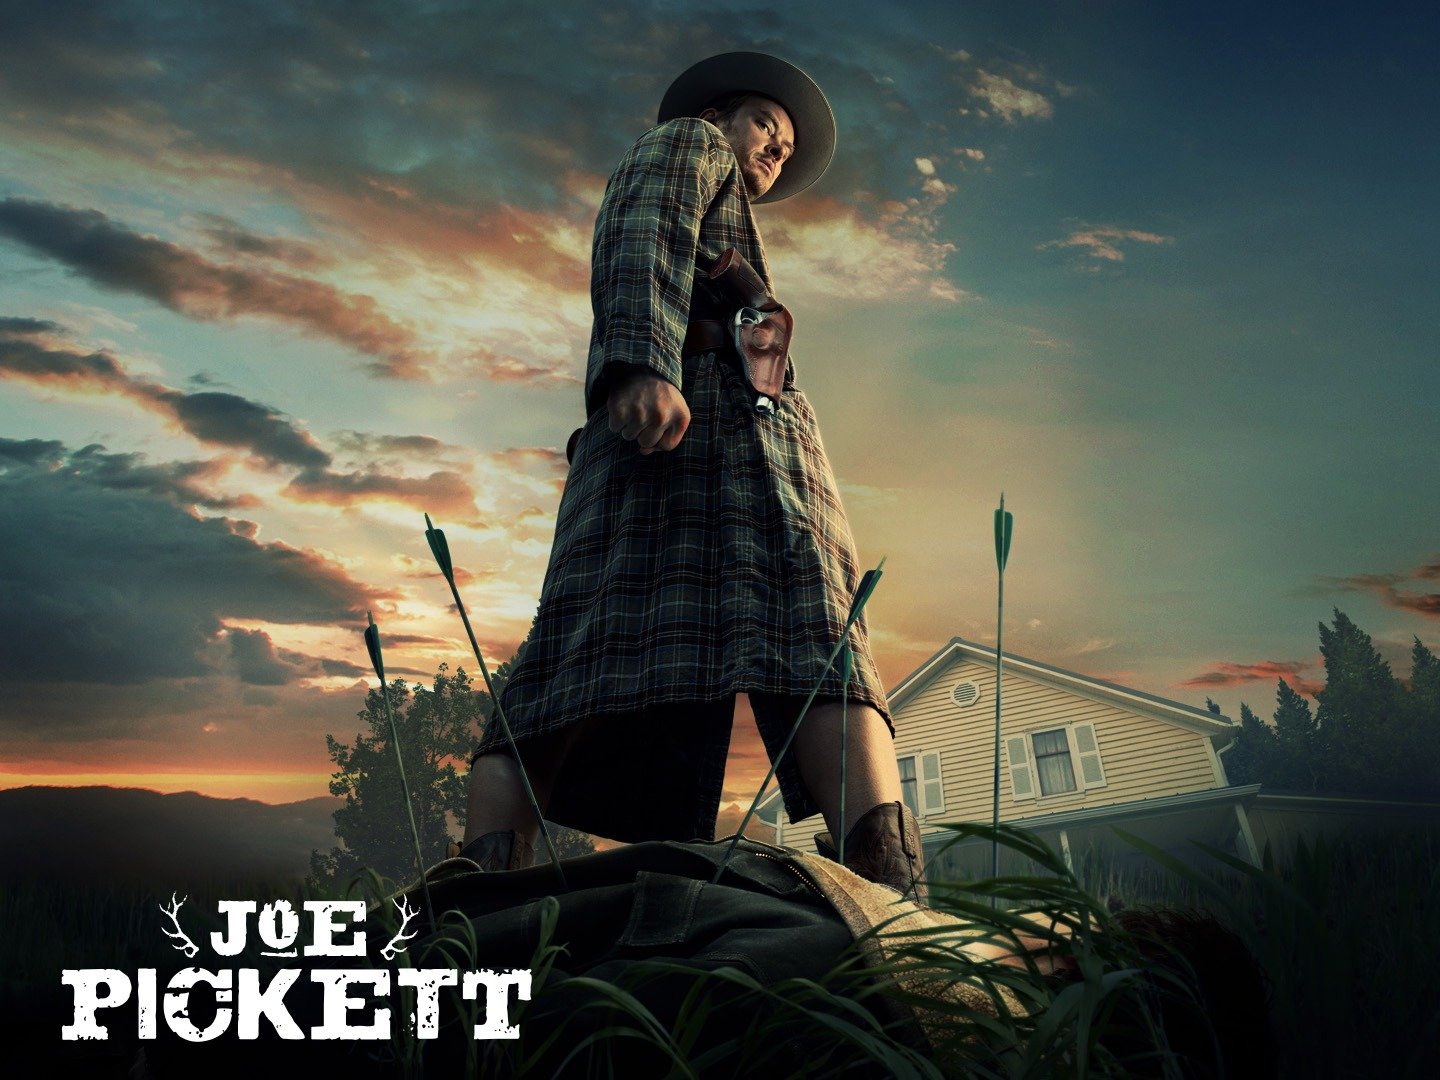 Serie Tv Joe Pickett, seconda stagione